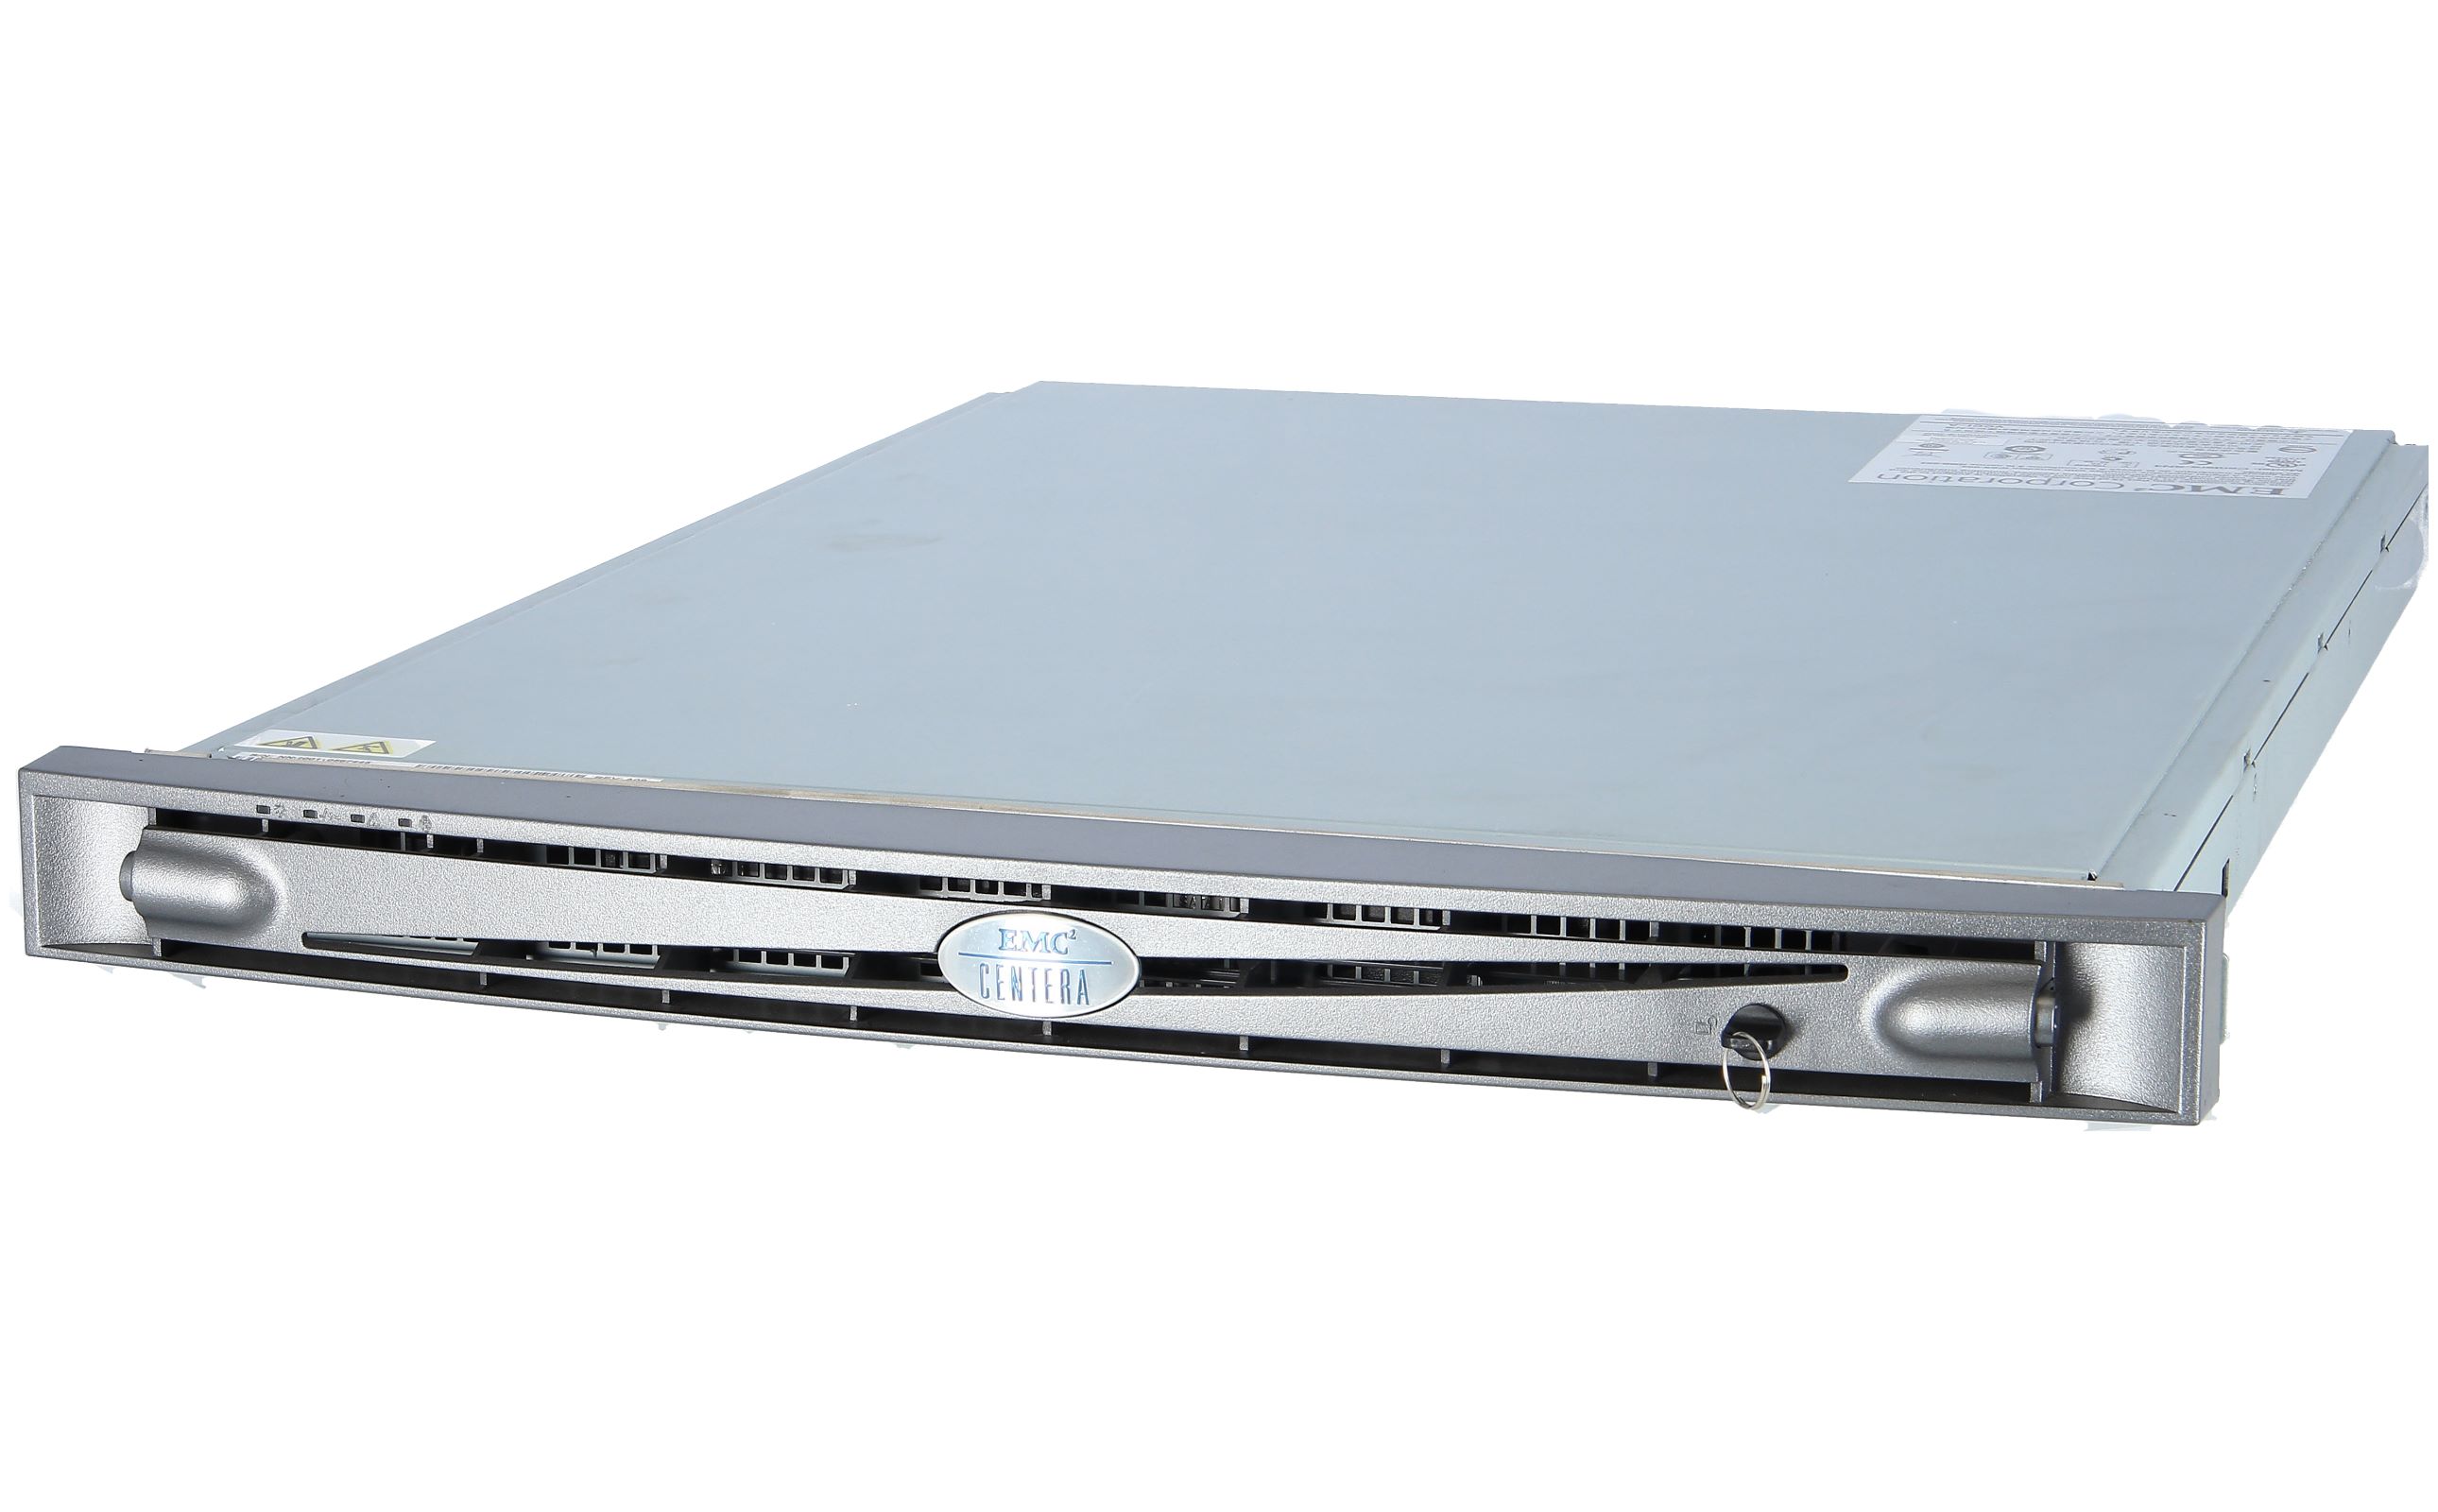 Emc 100 580 573 Centera Gen4lp Sn4 3tb Storage System W 3x1tb 1x Xeon 1 6ghz 1x1gb Ram New And Refurbished Buy Online Low Prices